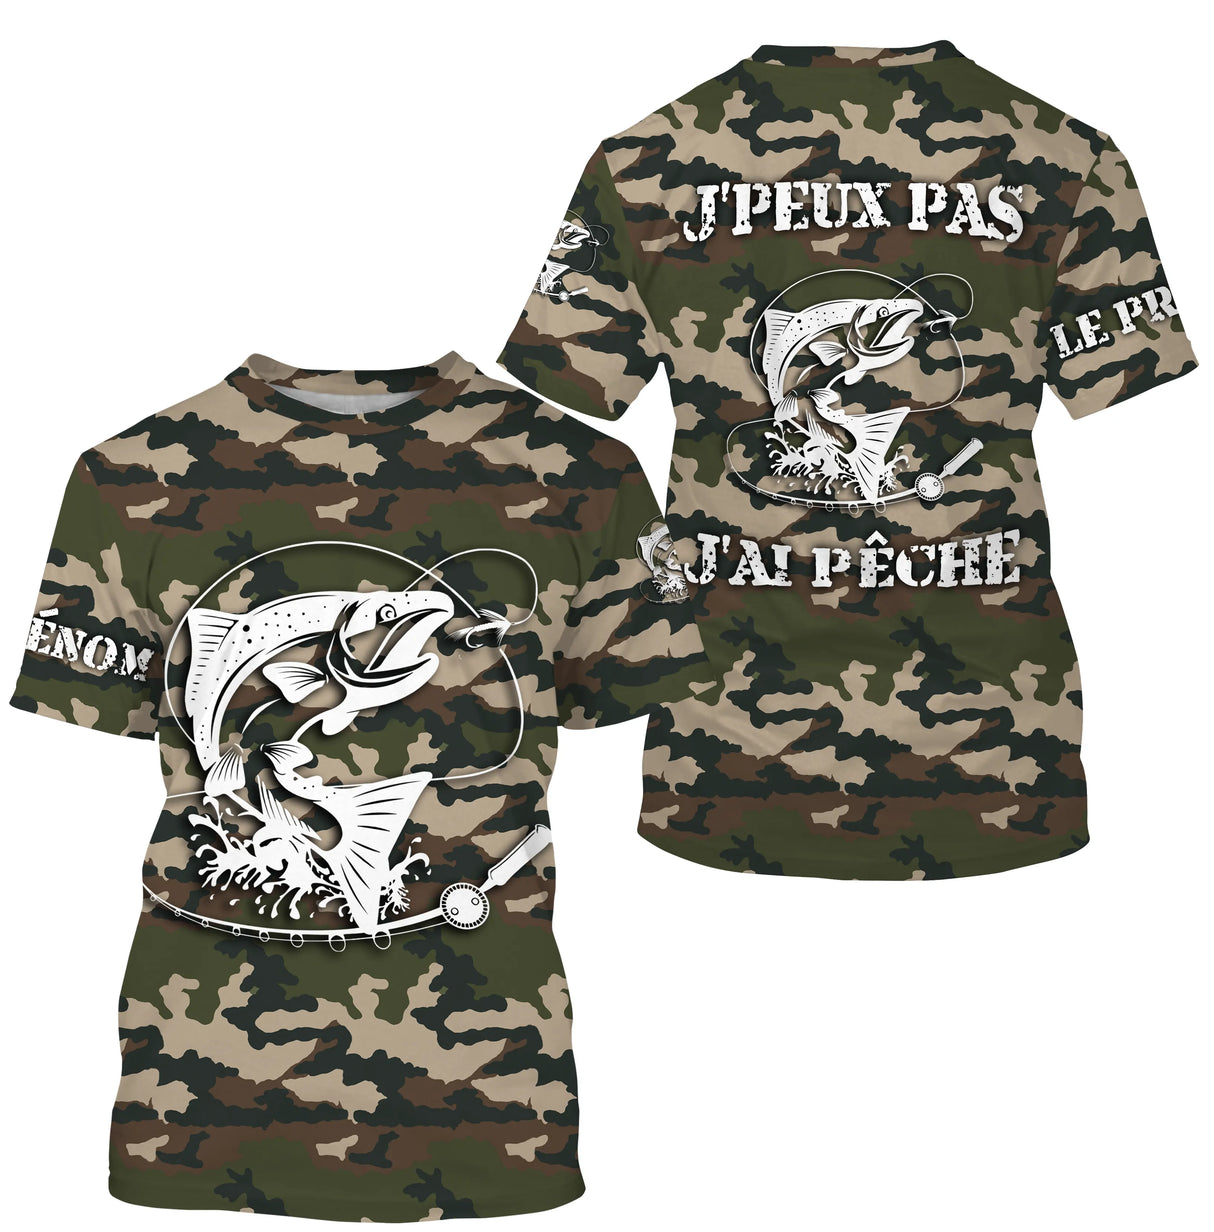 T-shirt umoristica sulla pesca al salmone, regalo originale per pescatori, mimetica per la pesca, t-shirt personalizzata, non posso pescare - CTS26042215